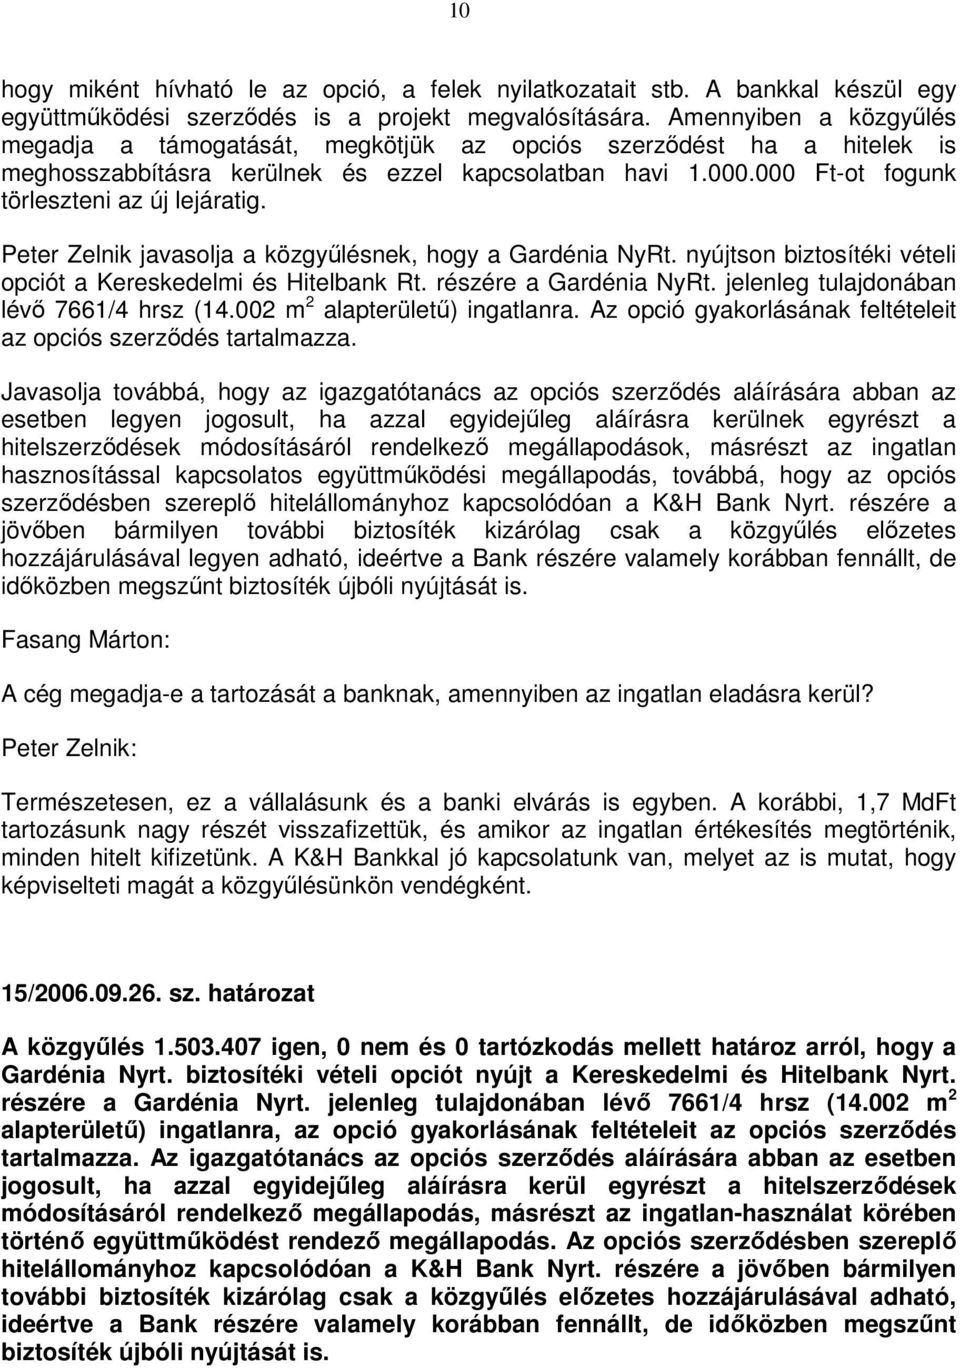 Peter Zelnik javasolja a közgyőlésnek, hogy a Gardénia NyRt. nyújtson biztosítéki vételi opciót a Kereskedelmi és Hitelbank Rt. részére a Gardénia NyRt. jelenleg tulajdonában lévı 7661/4 hrsz (14.